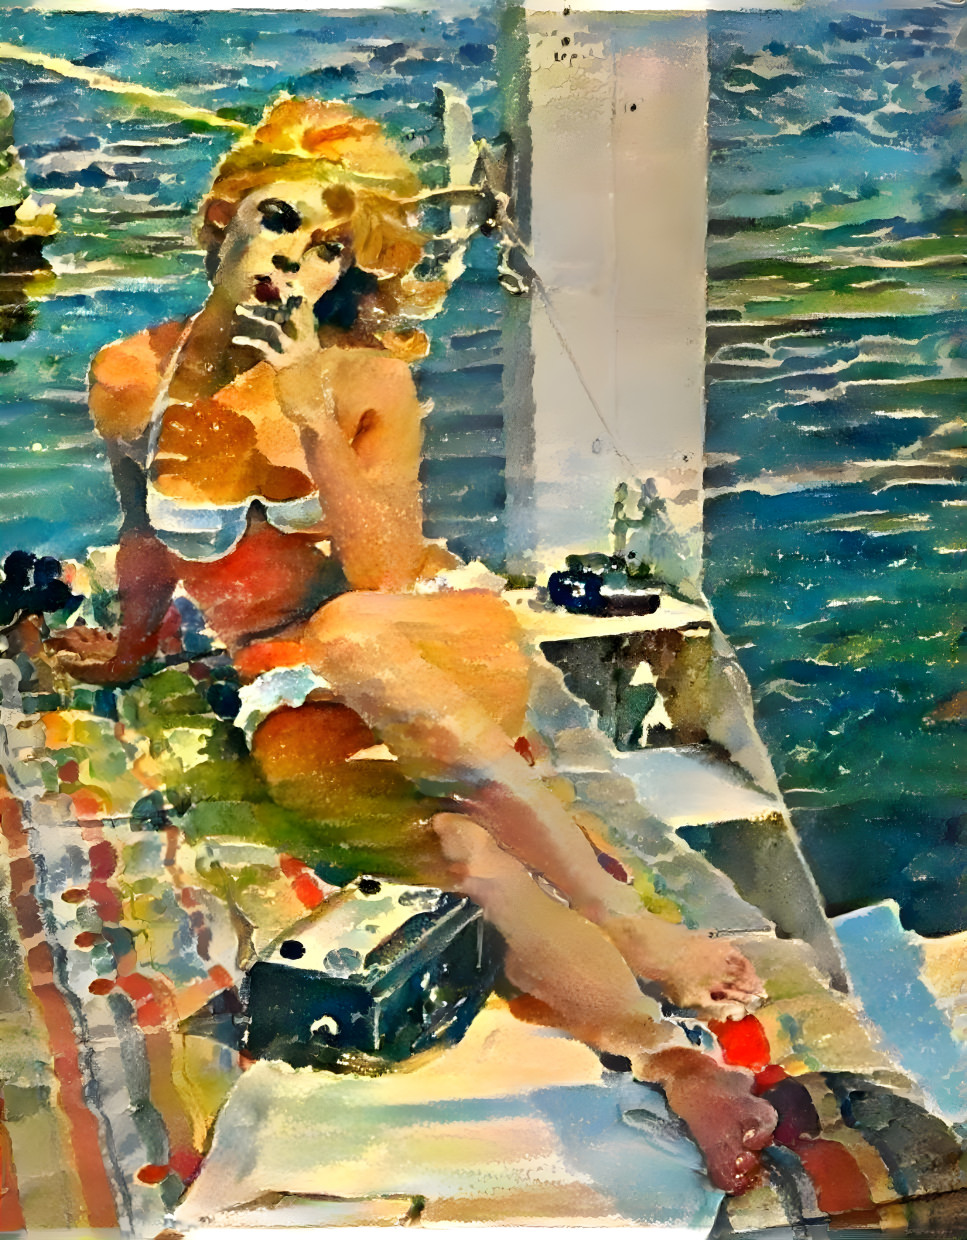 model in bikini smokes while suntanning on boat